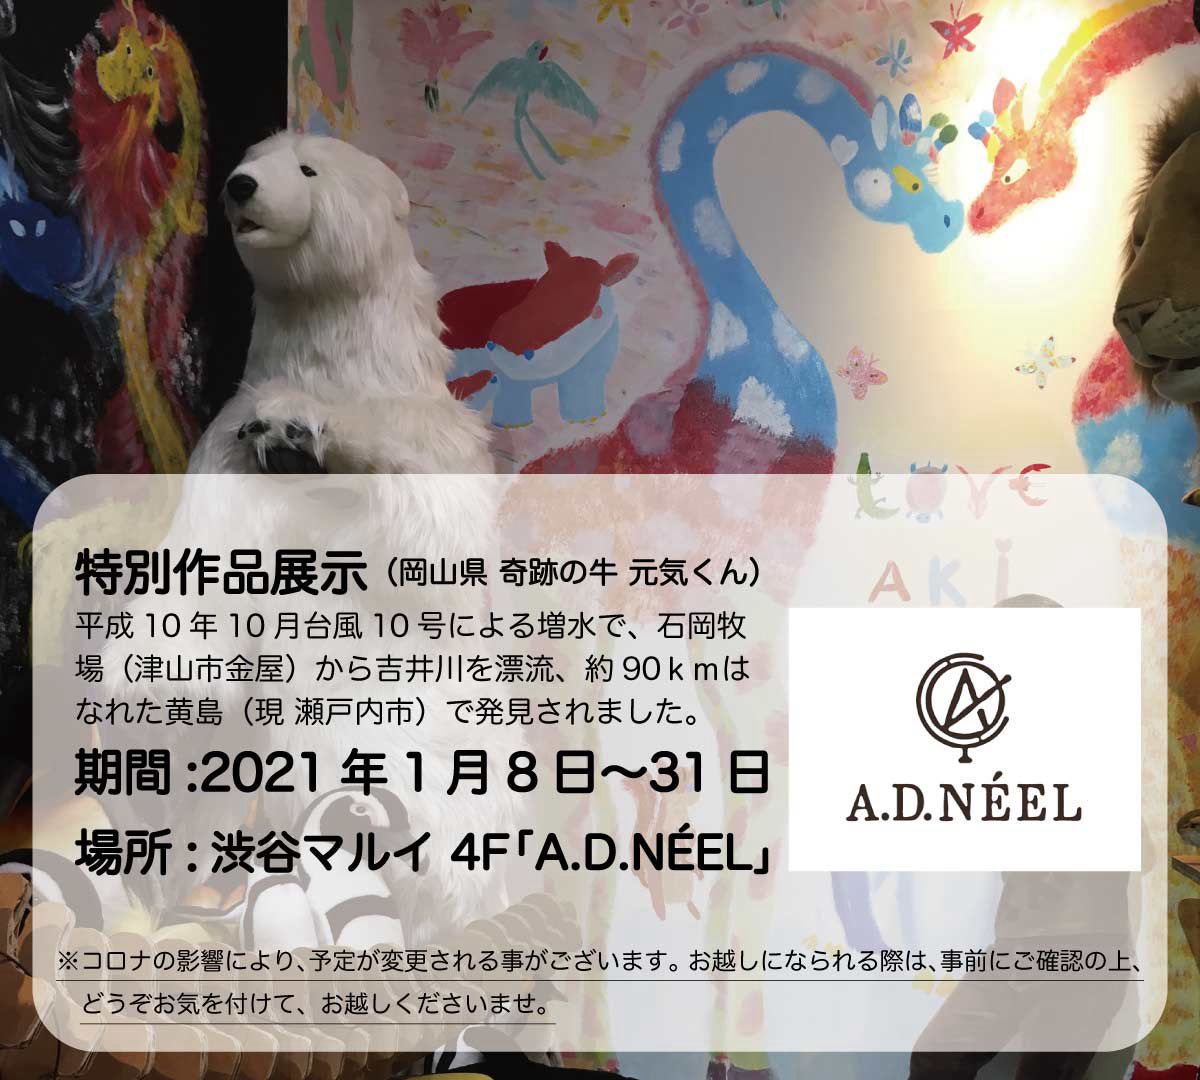 渋谷マルイ A.D.NEEL 奇跡の牛 新年イベント